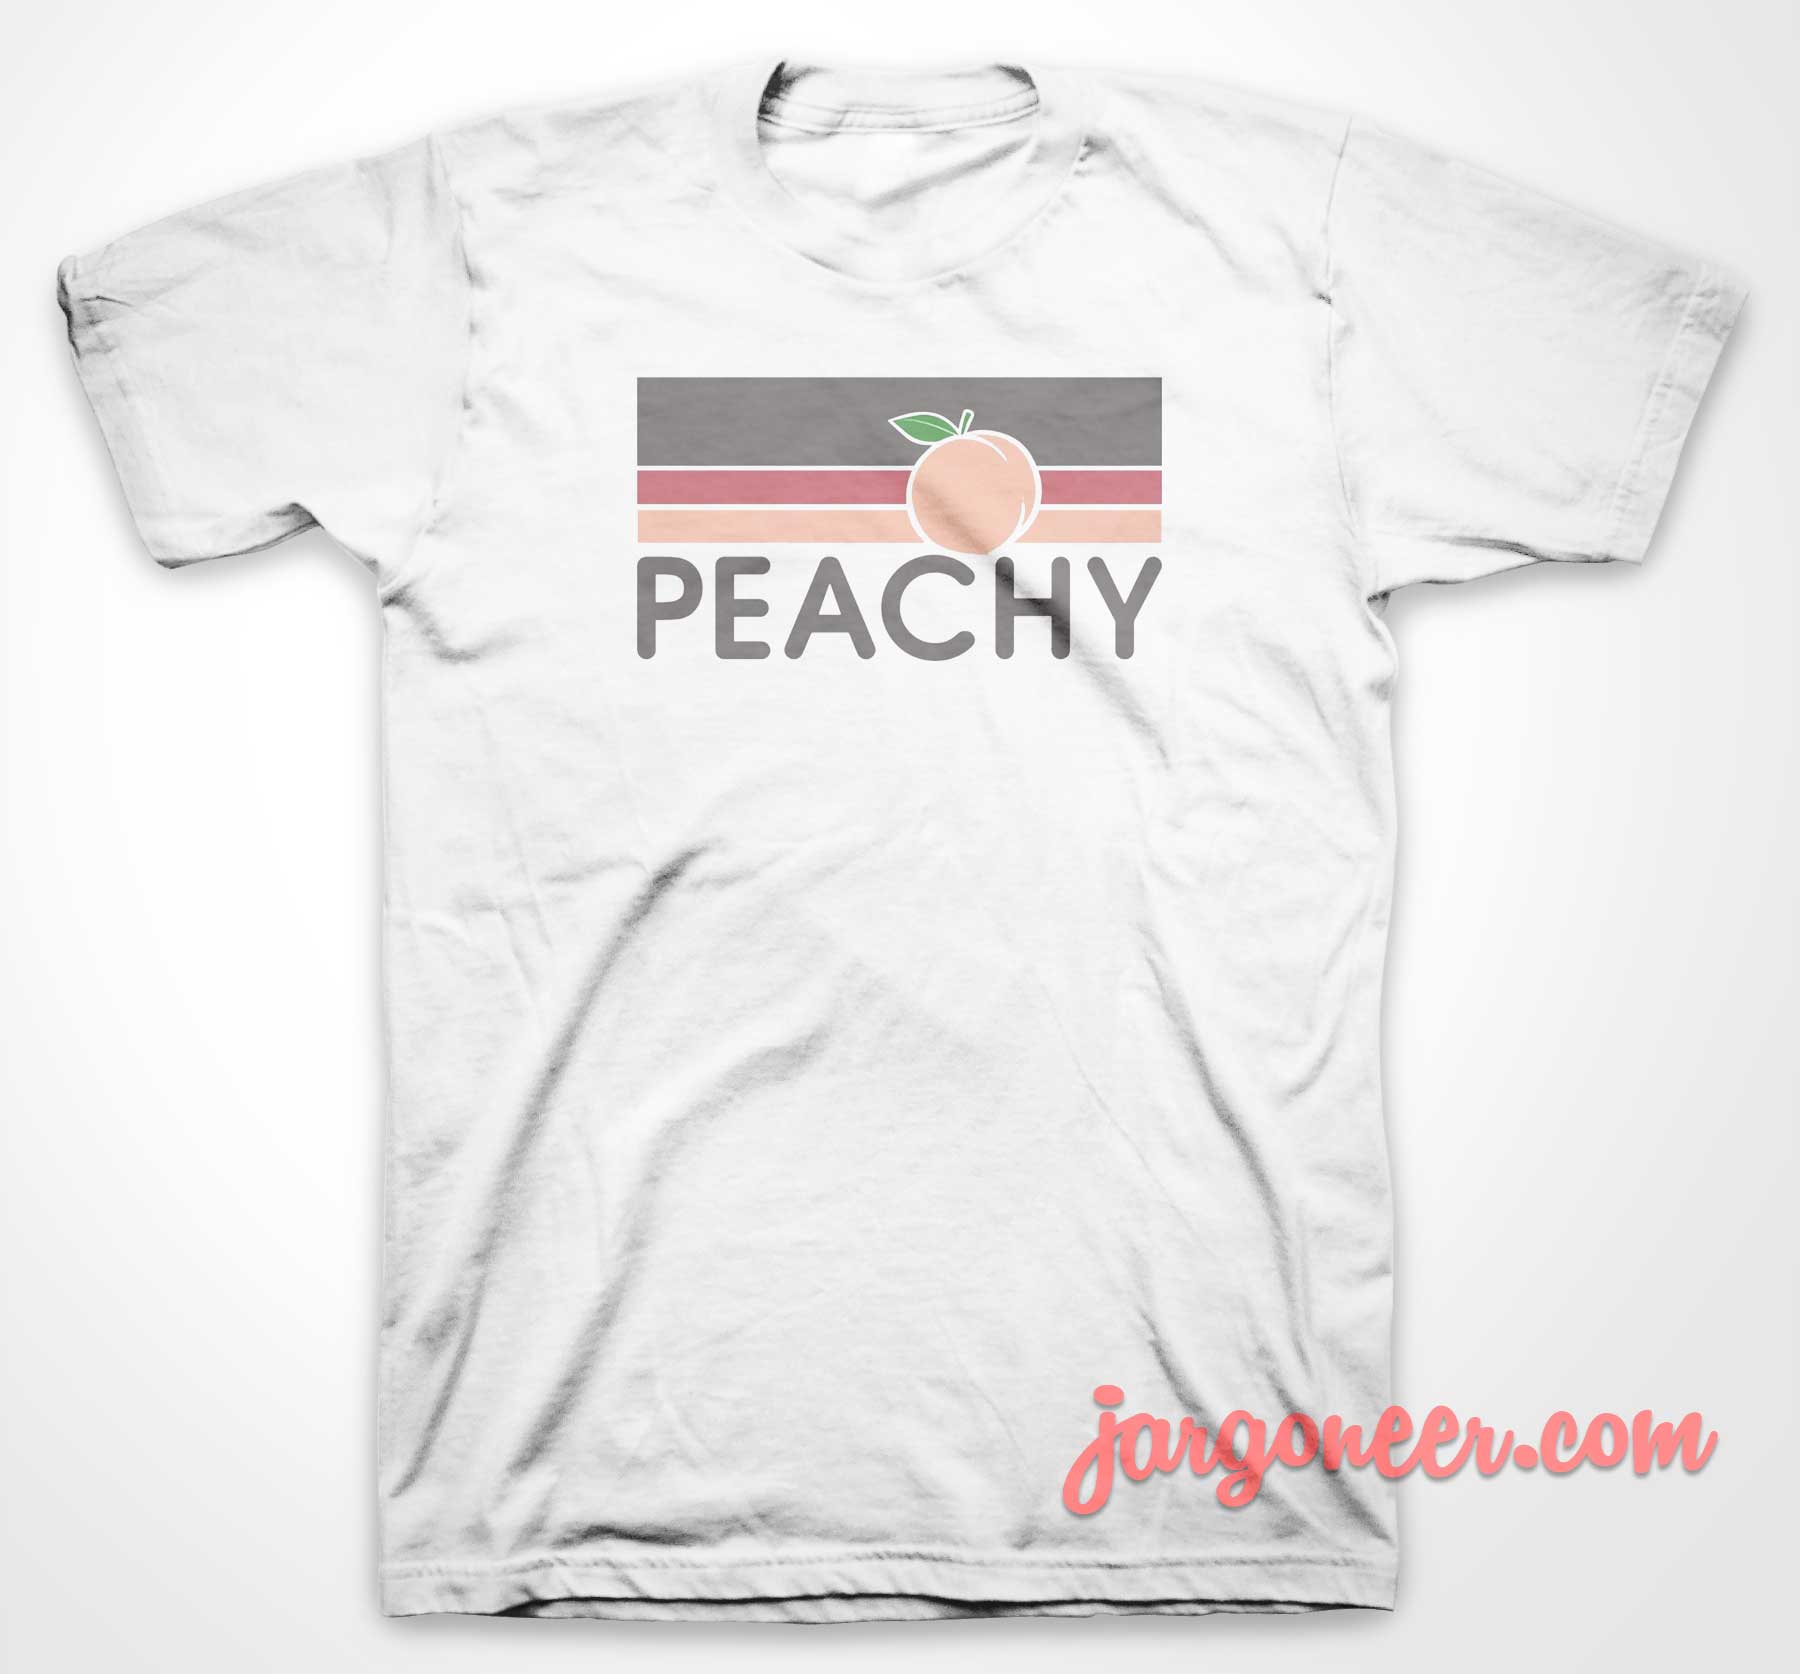 Peachy Vintage Retro 2 - Shop Unique Graphic Cool Shirt Designs